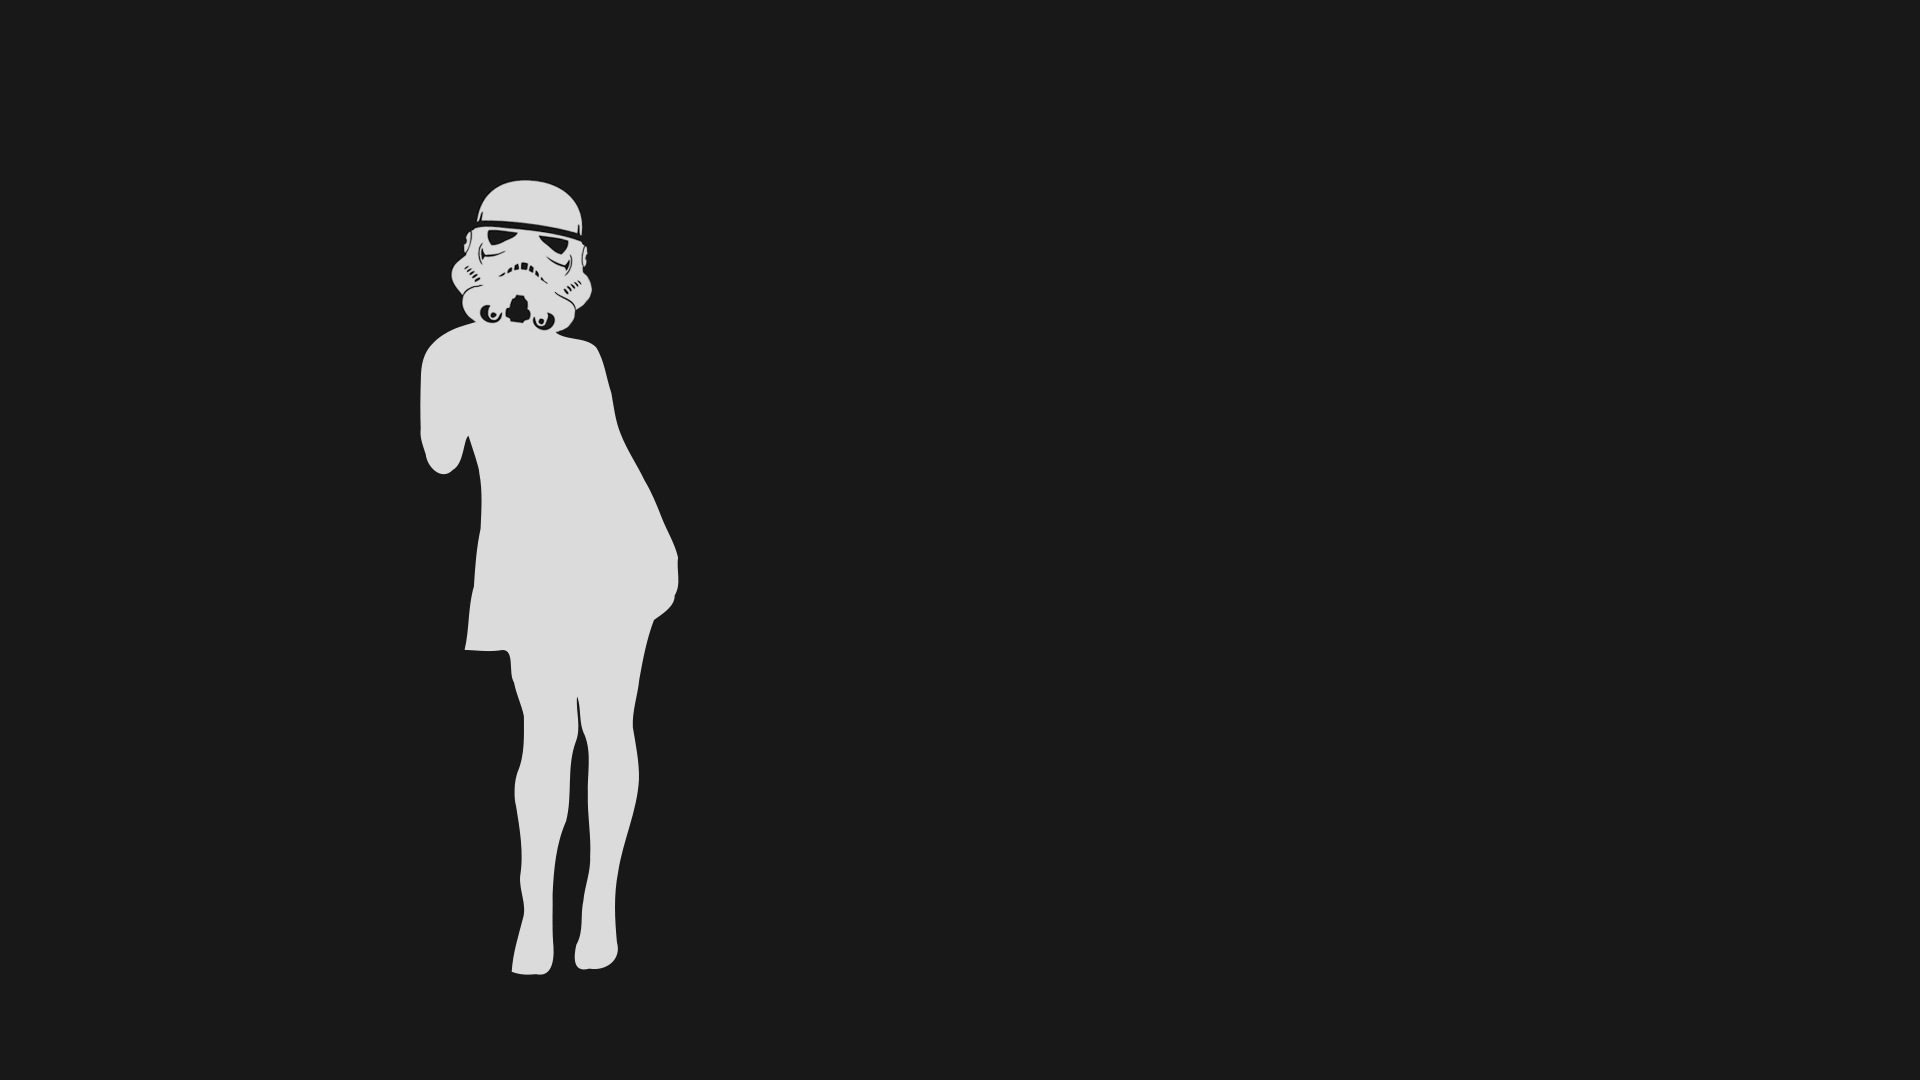 General 1920x1080 black background minimalism stormtrooper helmet movie characters simple background digital art Star Wars